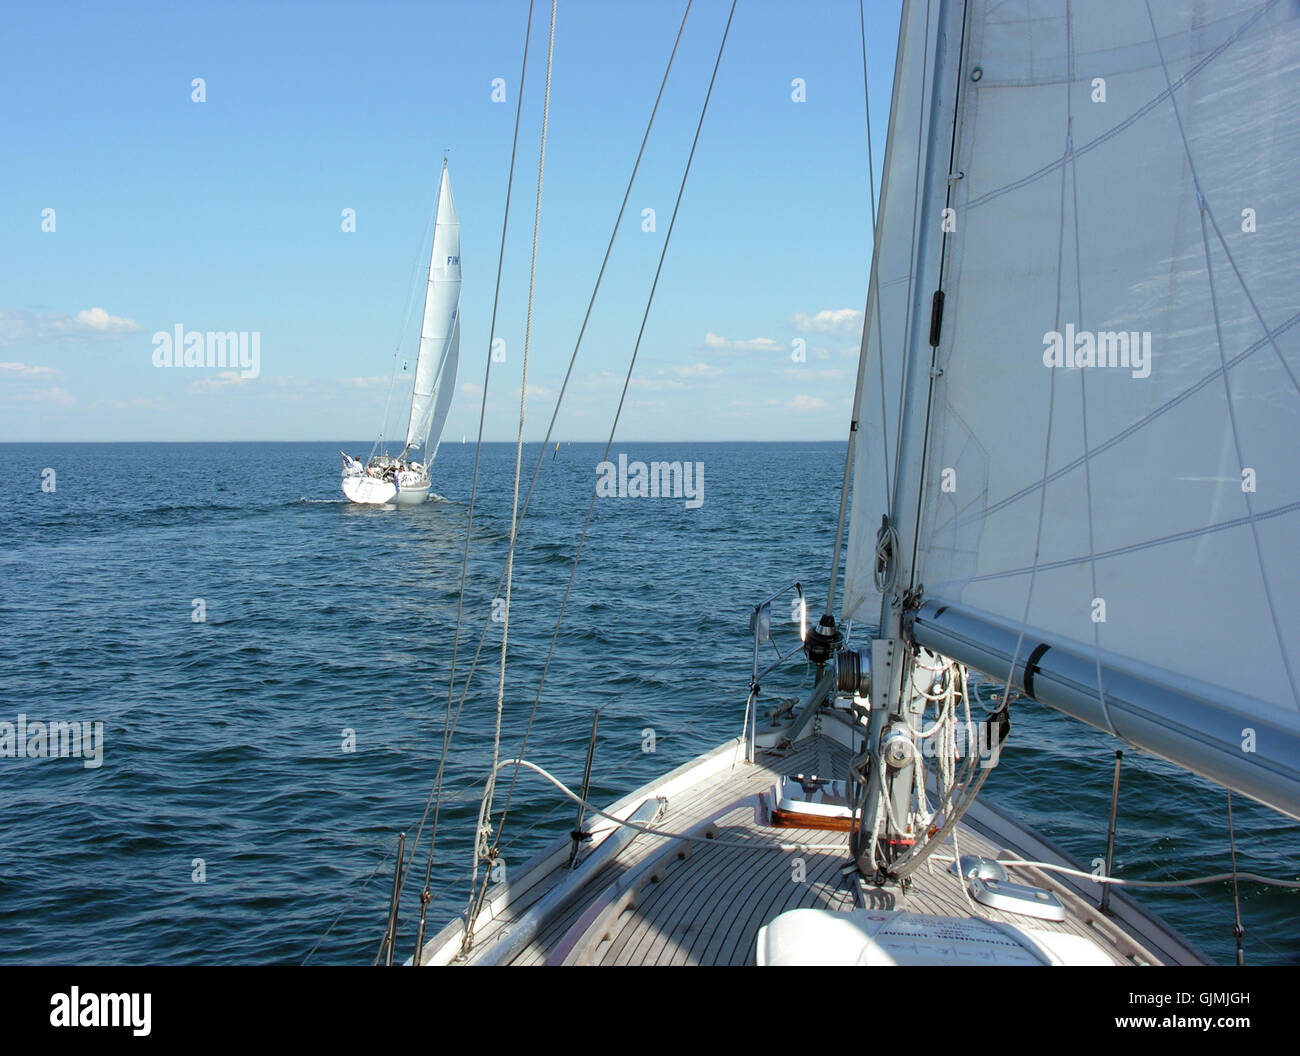 sail yachtsman sailing boats Stock Photo